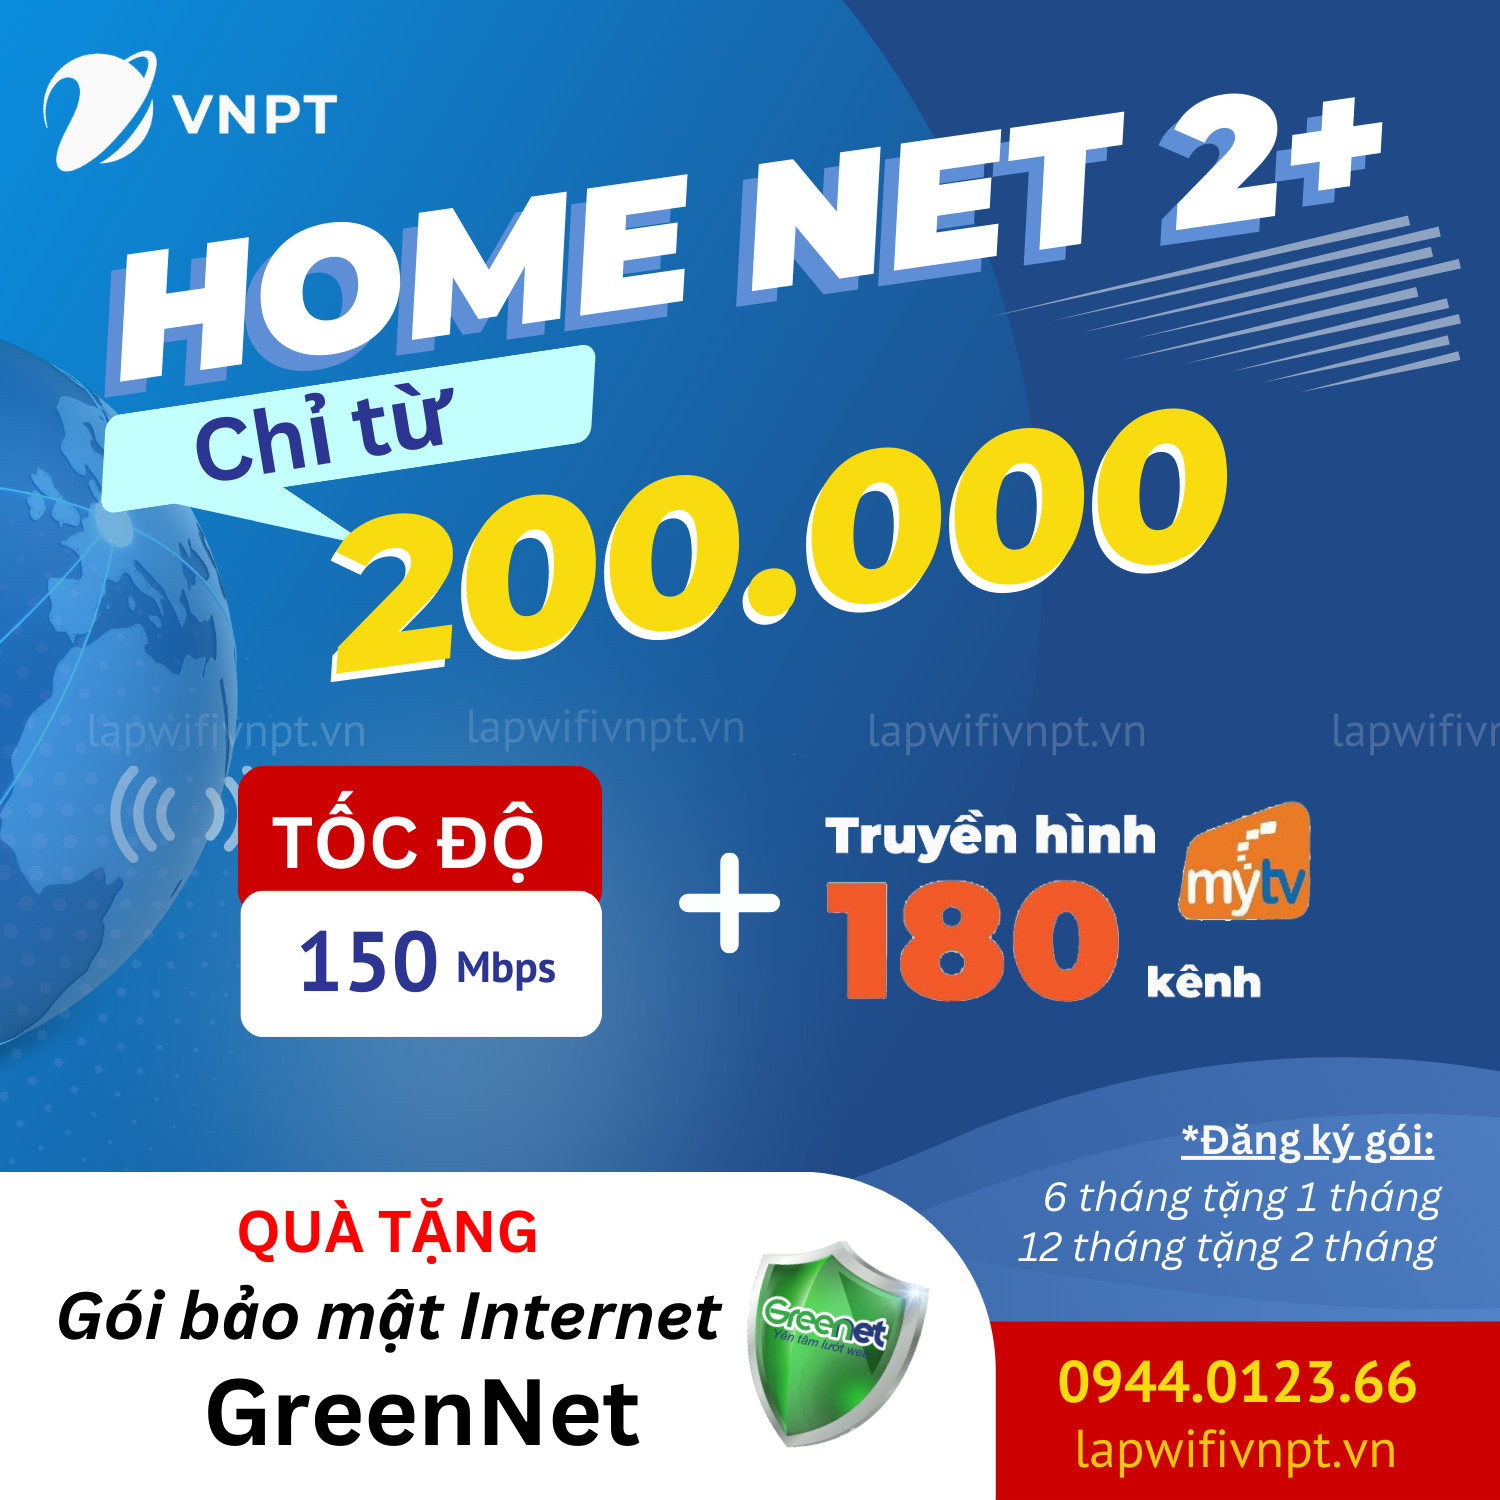 Goi Cuoc Home Net 2 Phus Vnpt, net 2 plus, net 2+, net 2+ vnpt, gói cước net 2+ vnpt, gói net 2+ vnpt